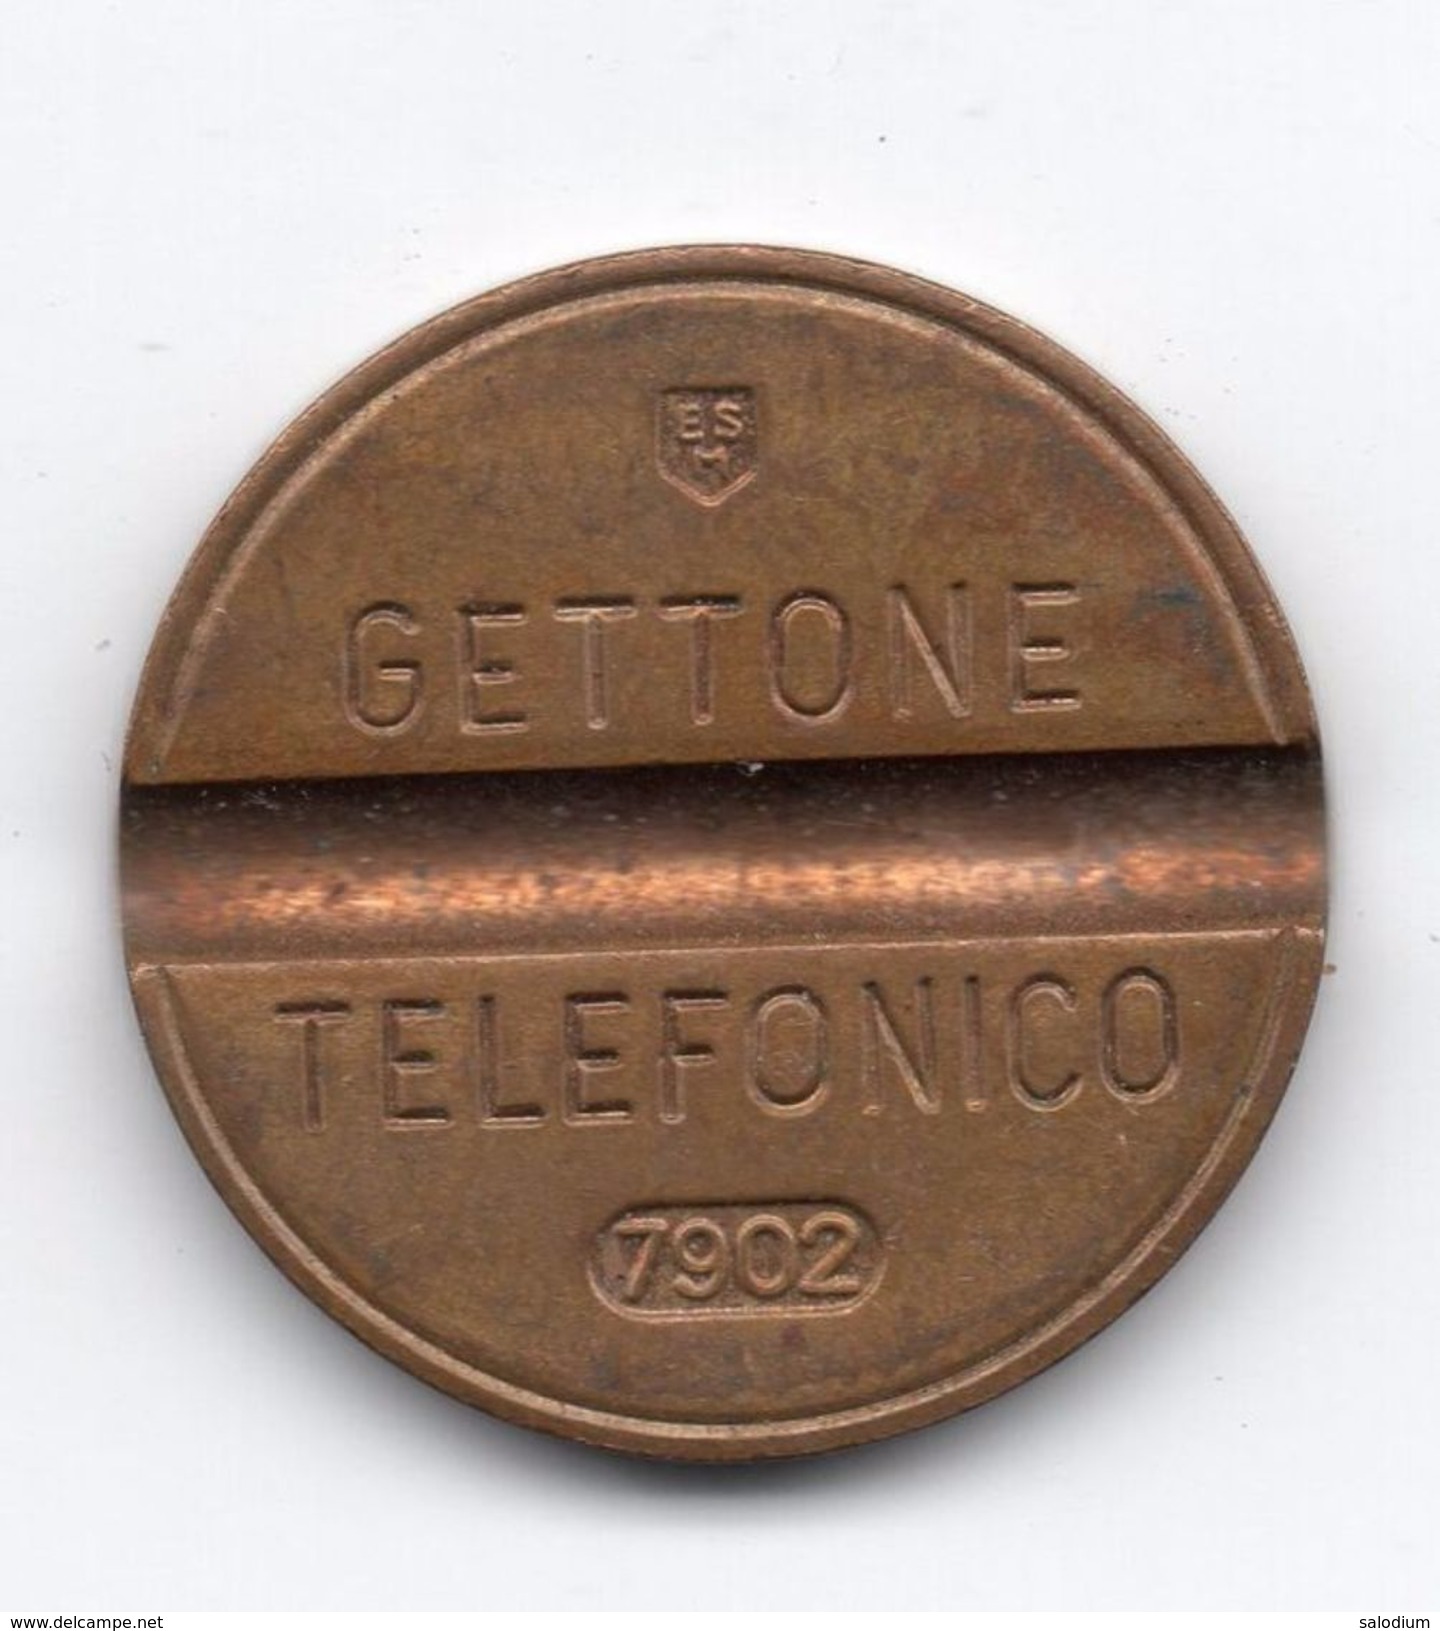 Gettone Telefonico 7902 Token Telephone - (Id-863) - Professionnels/De Société